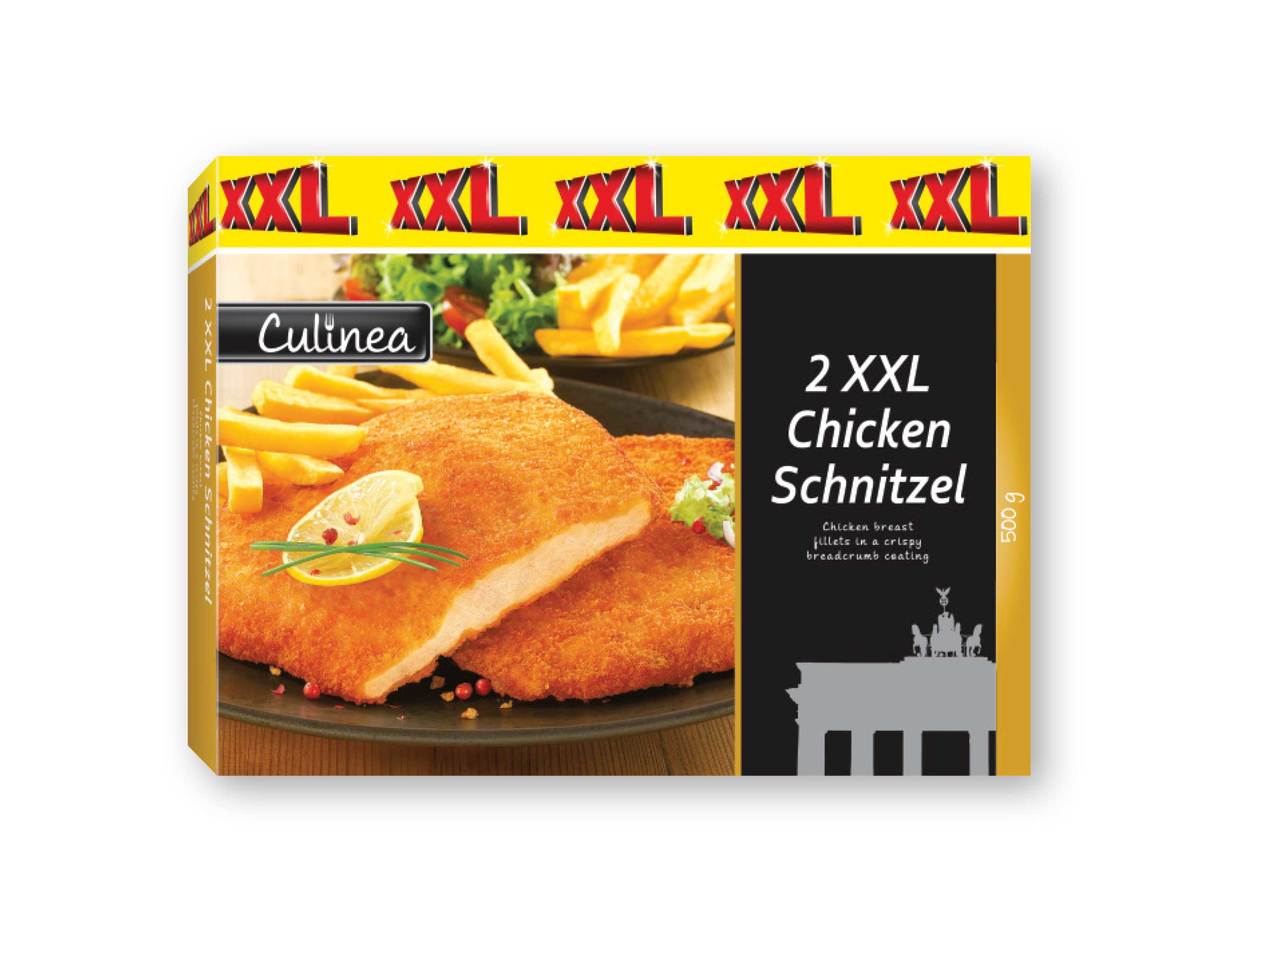 CULINEA 2 XXL Chicken Schnitzels